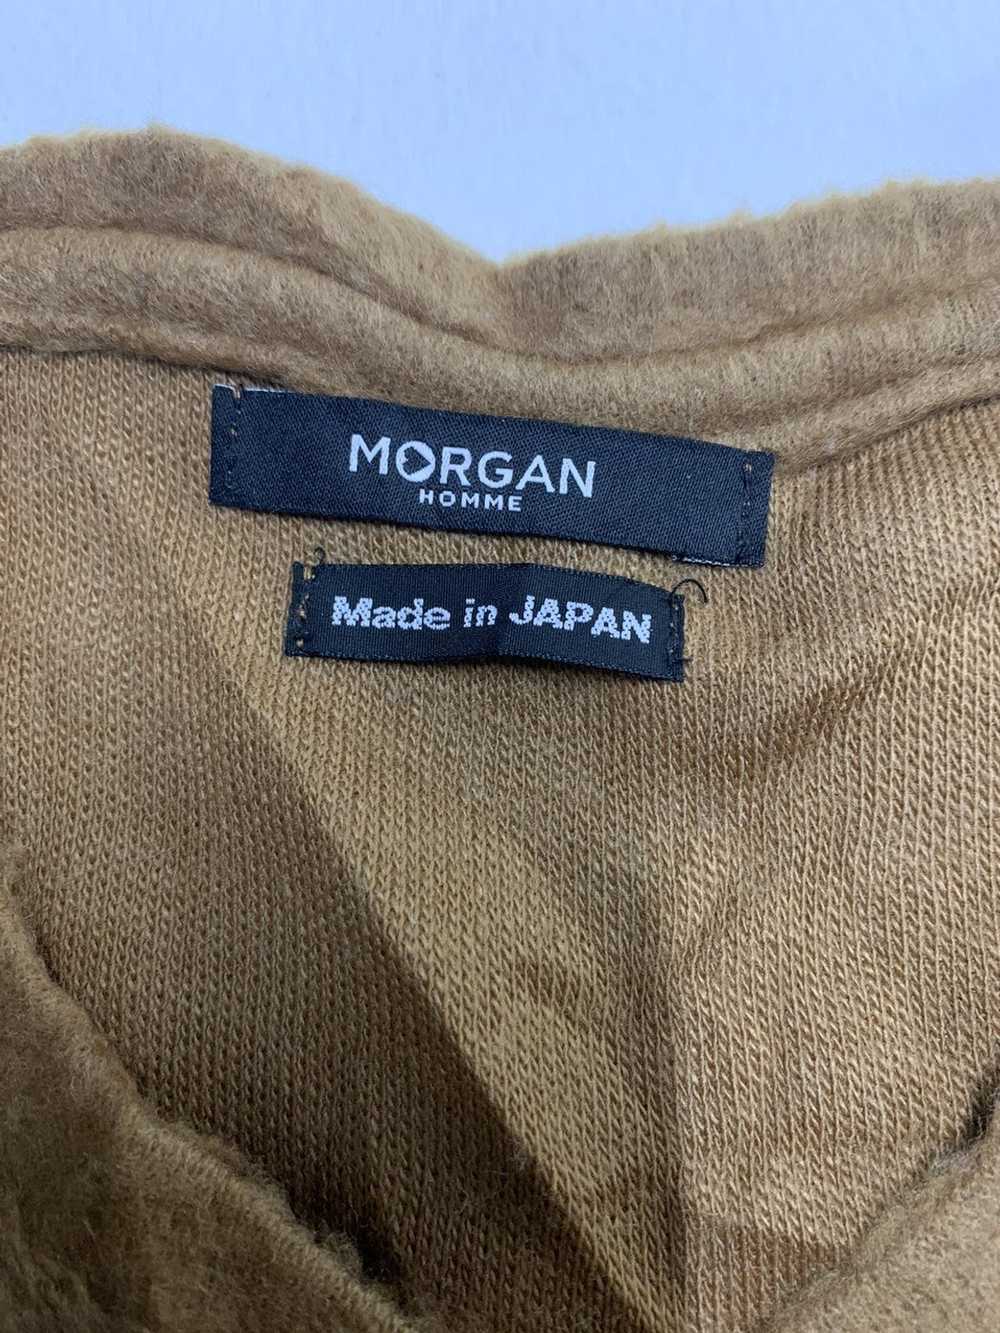 Japanese Brand × Morgan Homme Japanese Brand Morg… - image 4